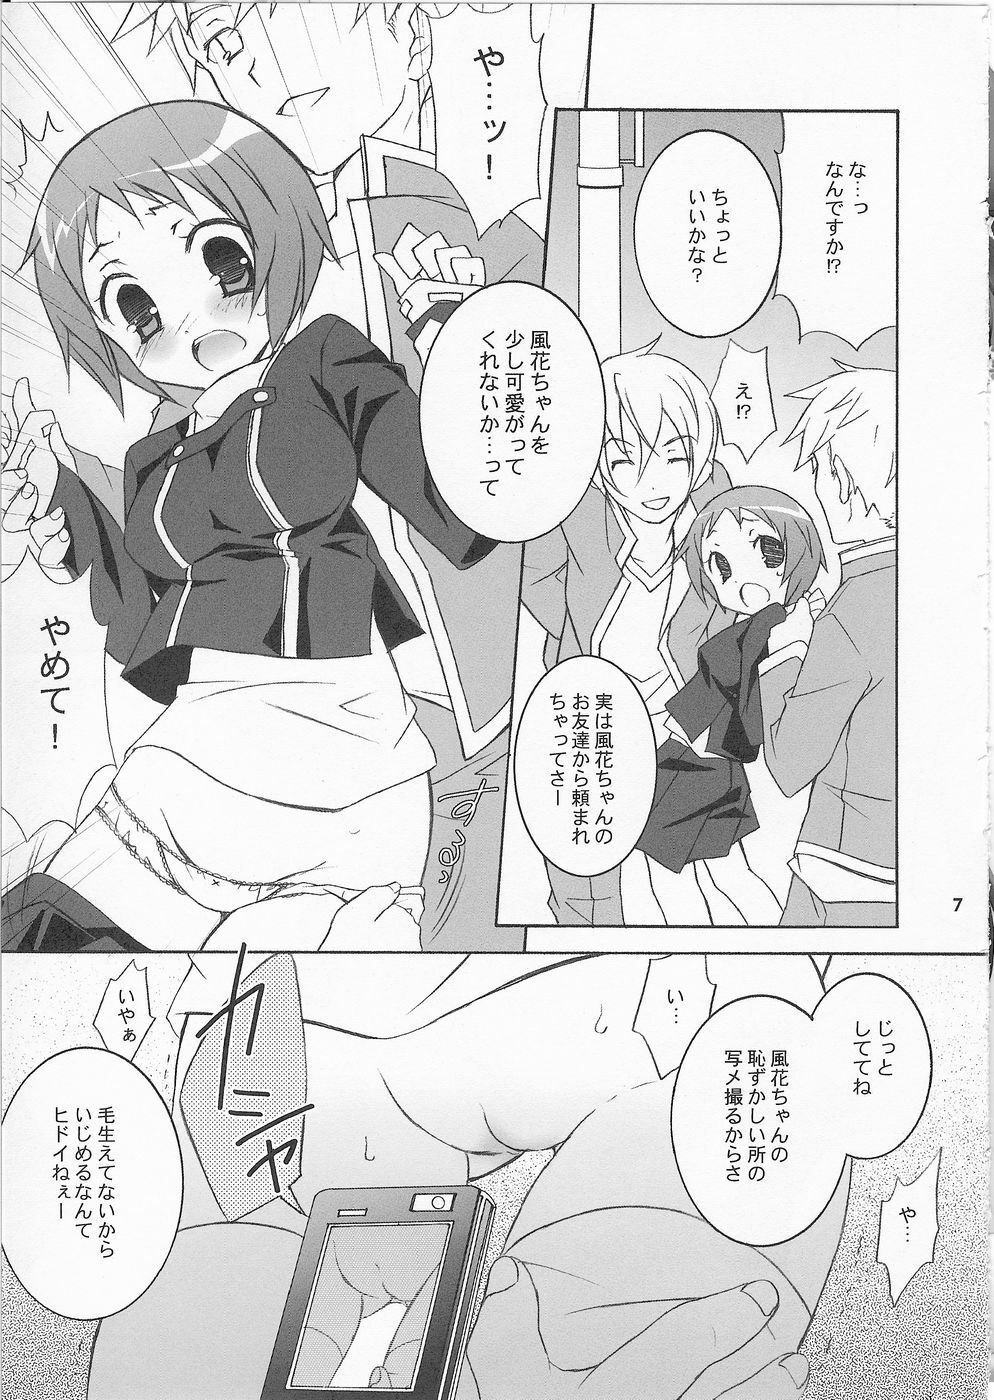 (SC33) [Tenjikuya (Mochizuki Nana)] 3P (Persona 3) page 6 full